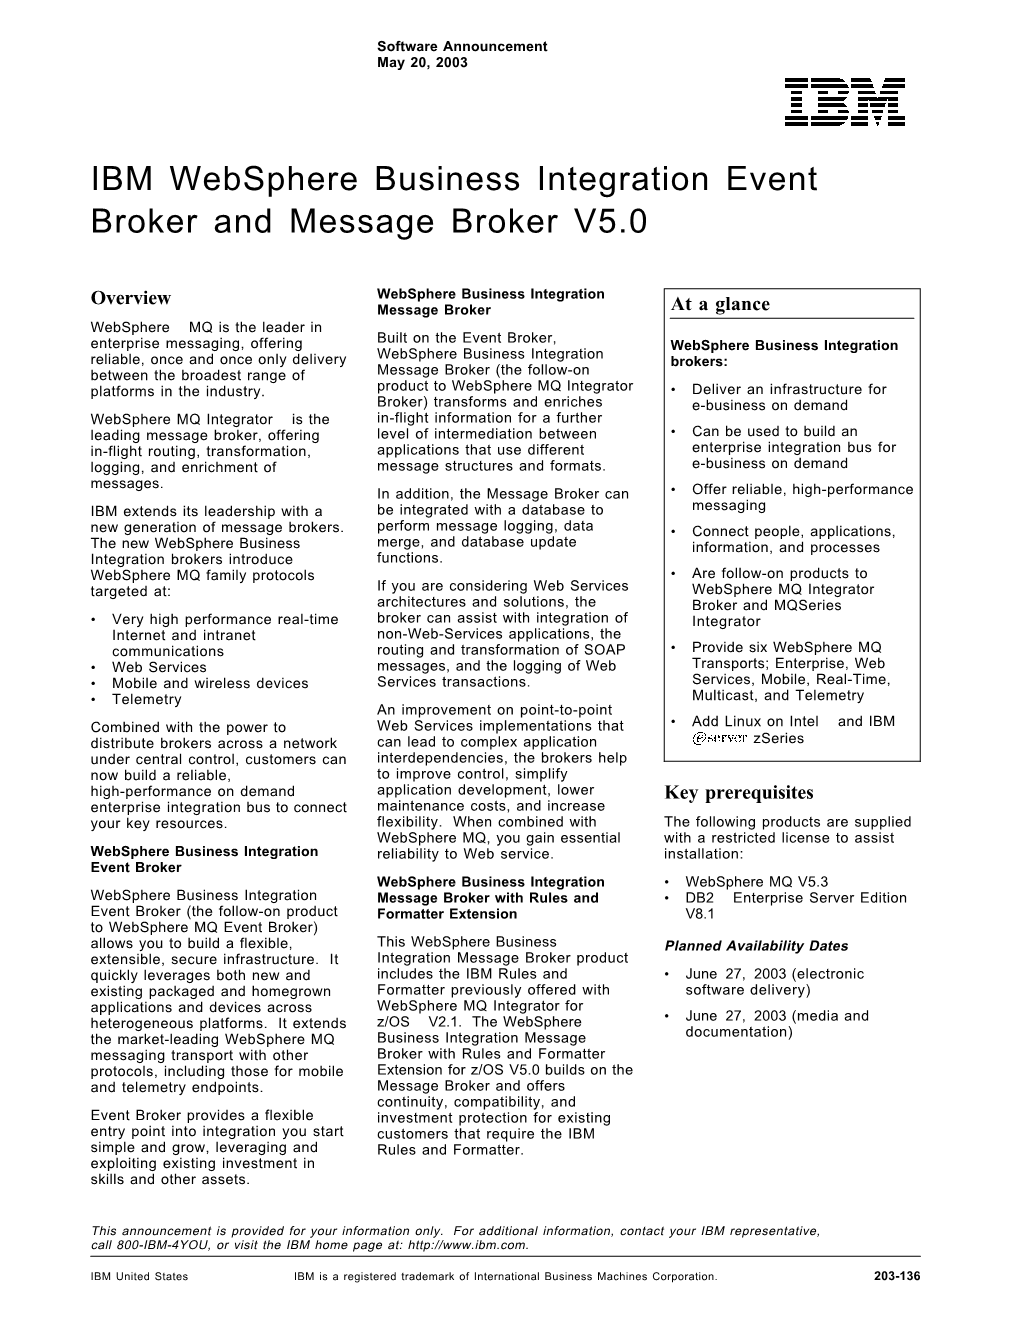 IBM Websphere Business Integration Event Broker and Message Broker V5.0